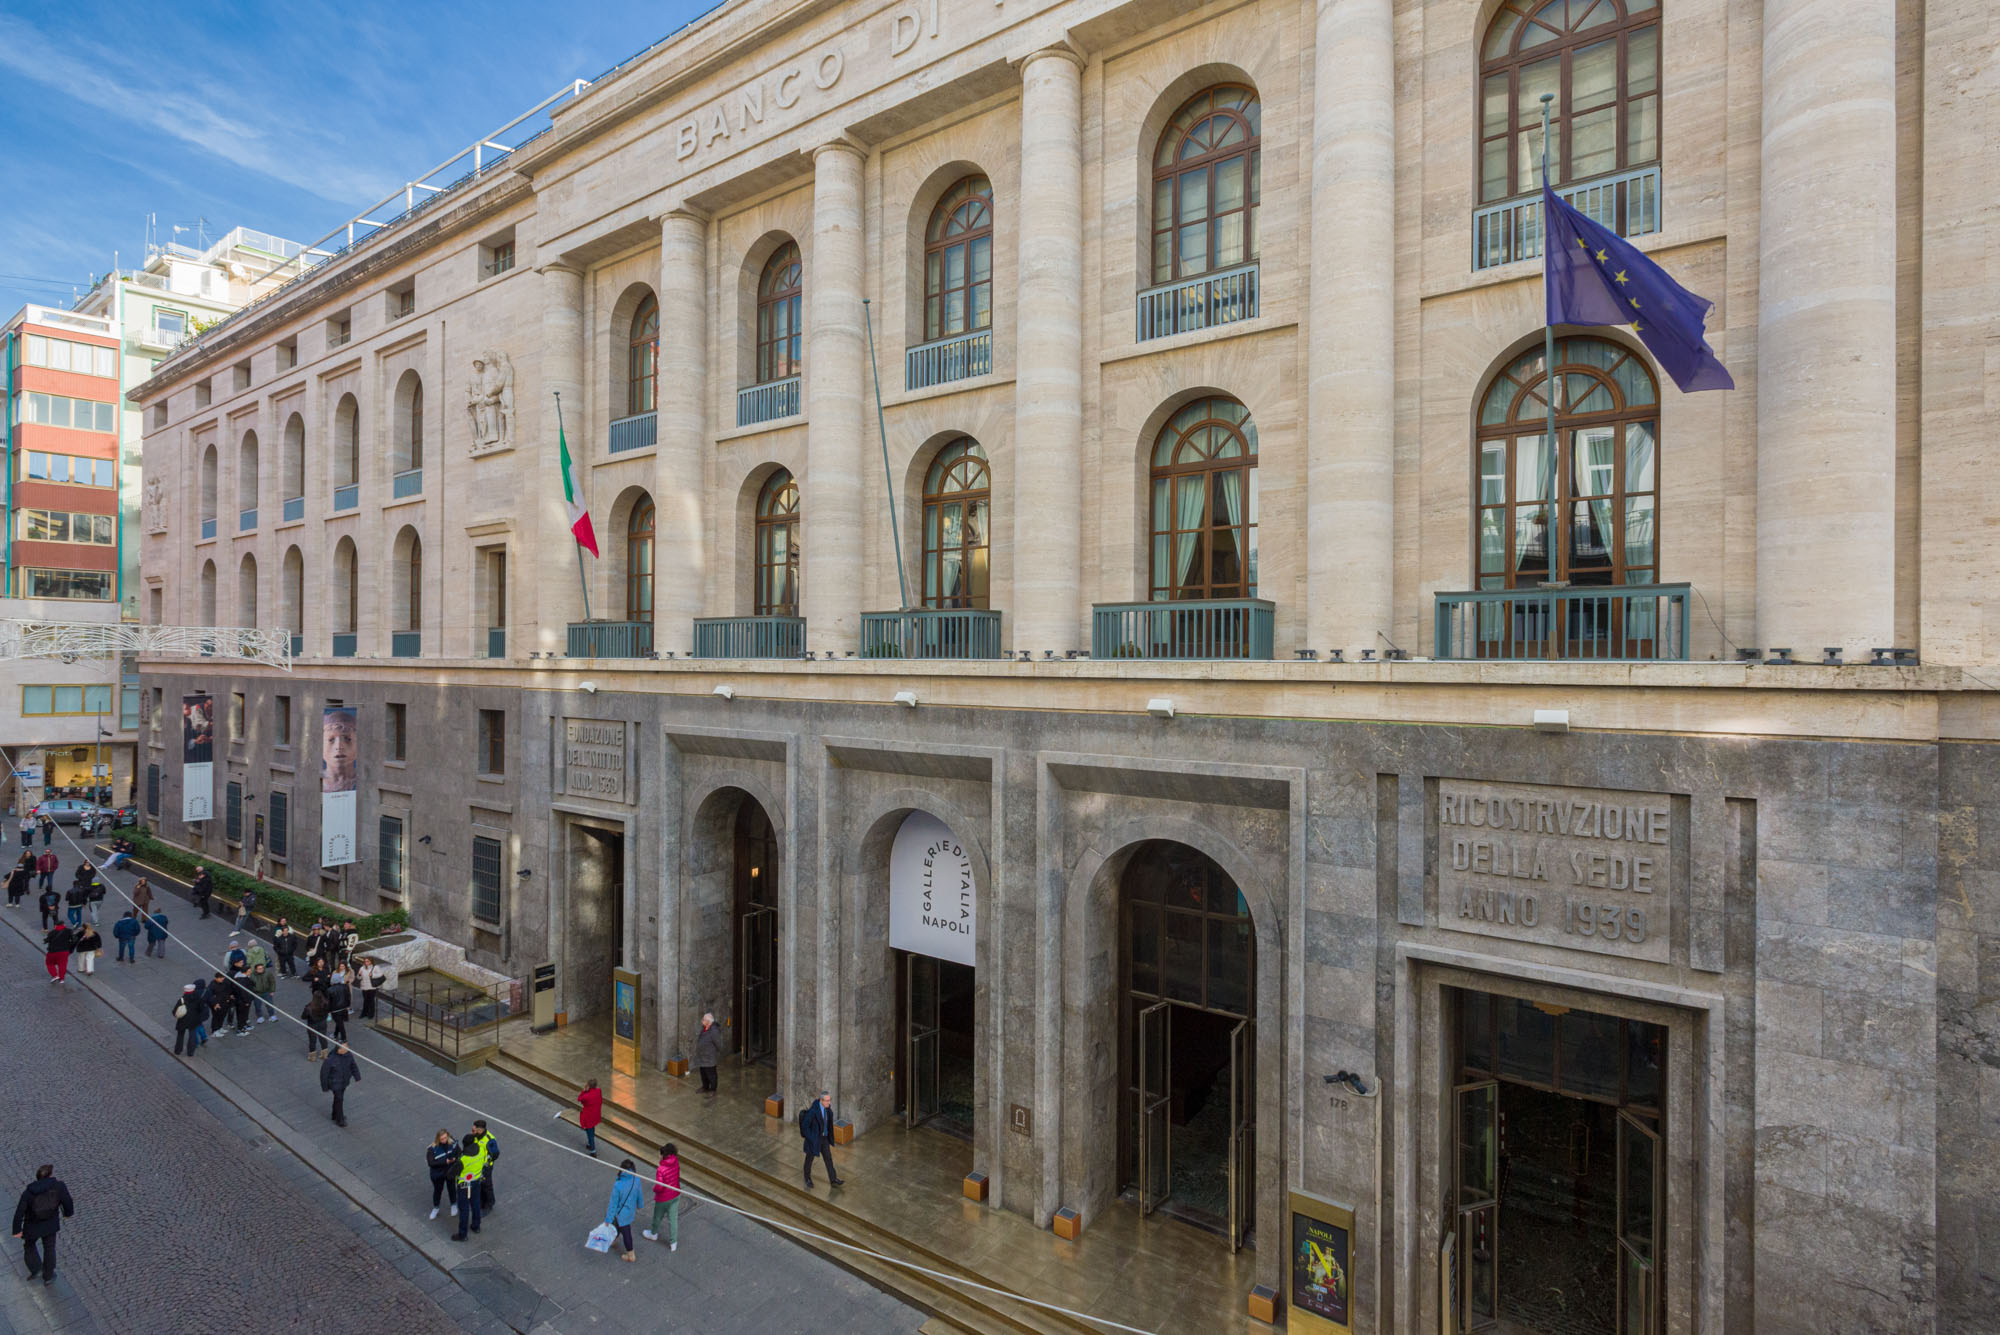 Façade of Palazzo del Banco di Napoli